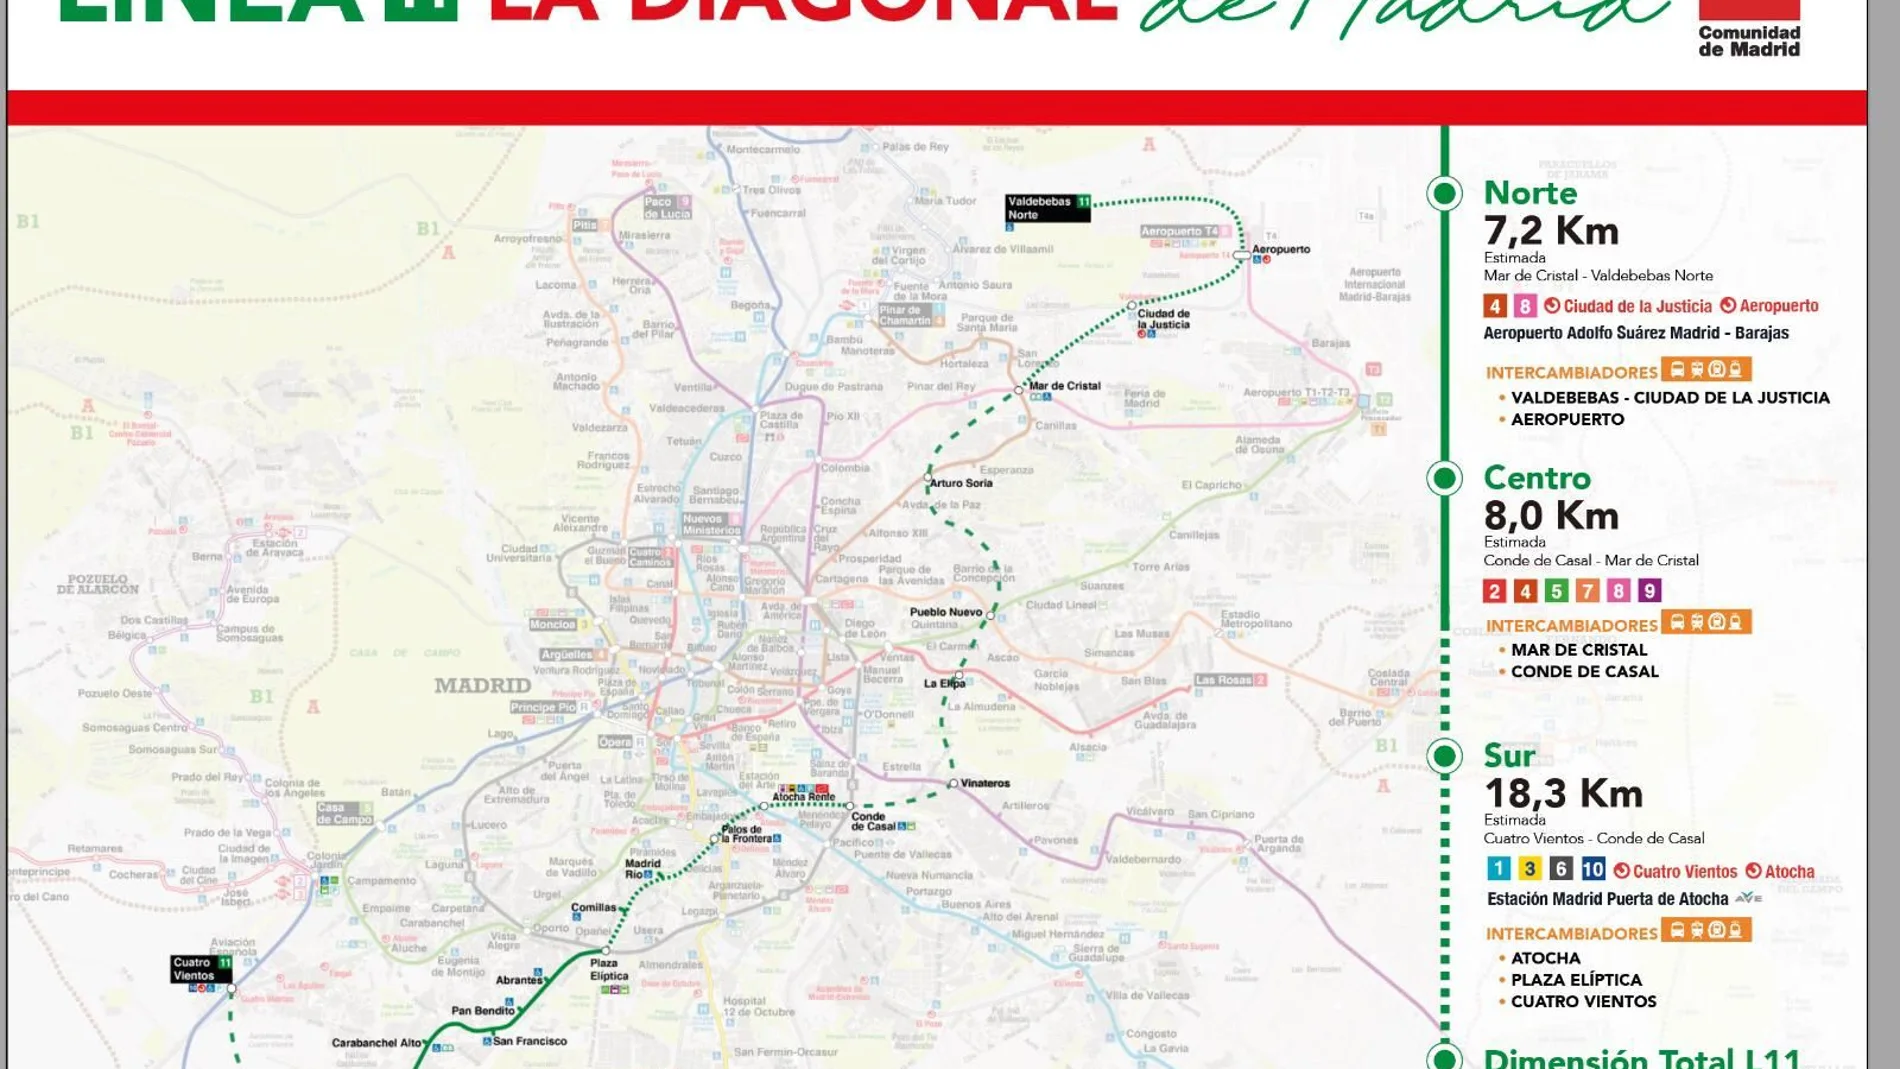 La Diagonal de las comunicaciones de Madrid